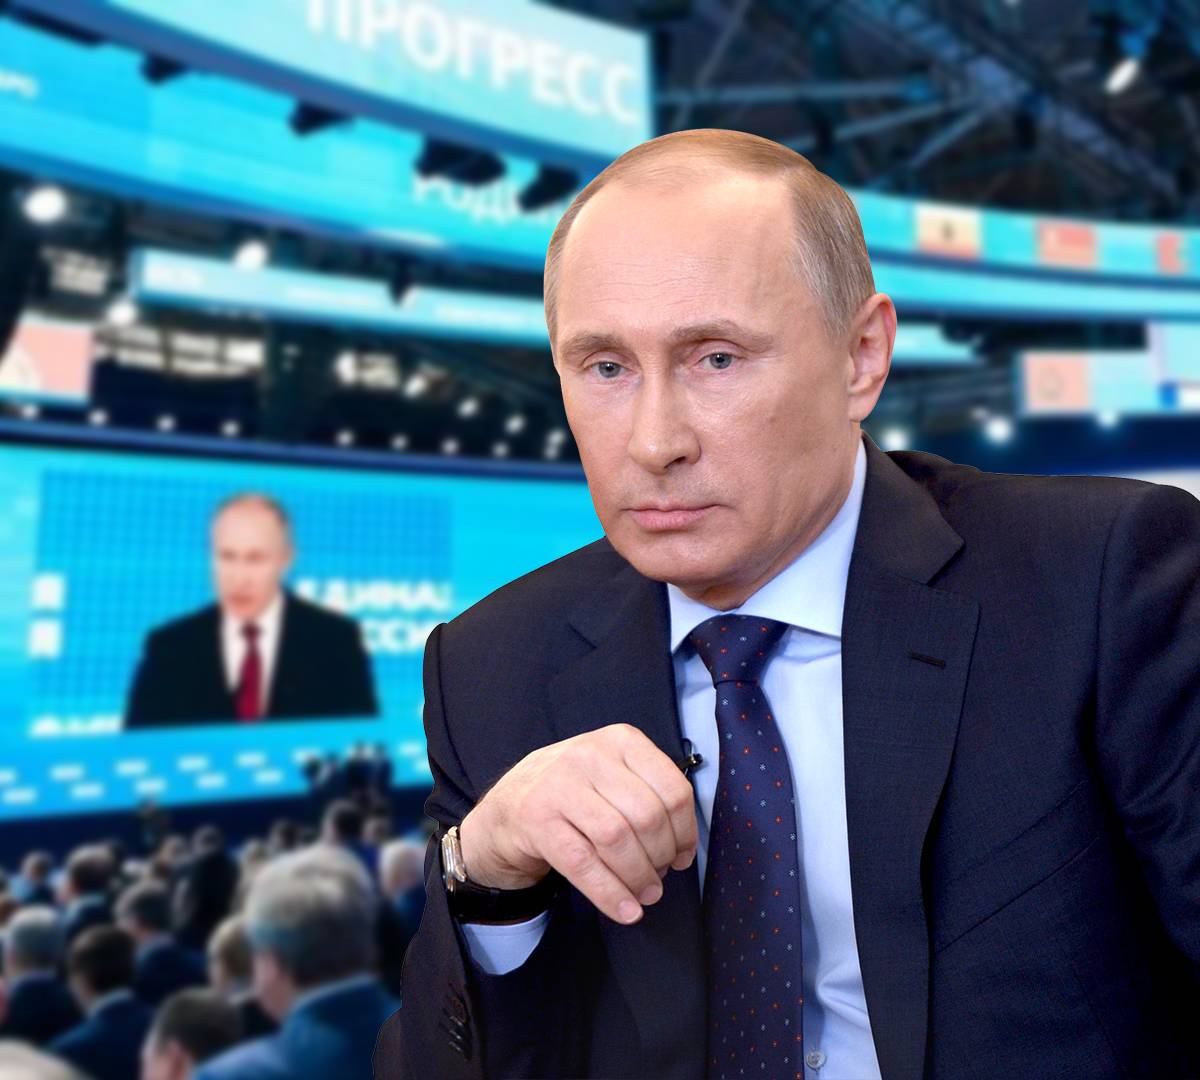 Уговоры вместо чистки: Путин хочет реанимировать ЕдРо